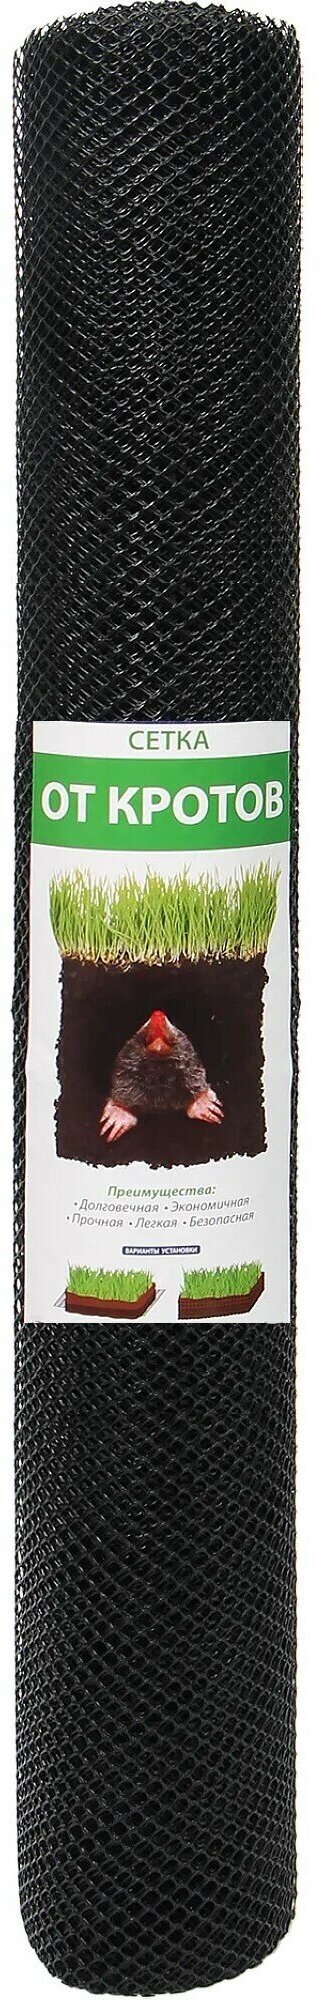 Сетка для защиты от кротов 10 м Г-9/1/10 цвет черный для защиты газона от нашествия подземных грызунов препятствует их выходу на поверхность долговечная не гниет не мешает росту травы